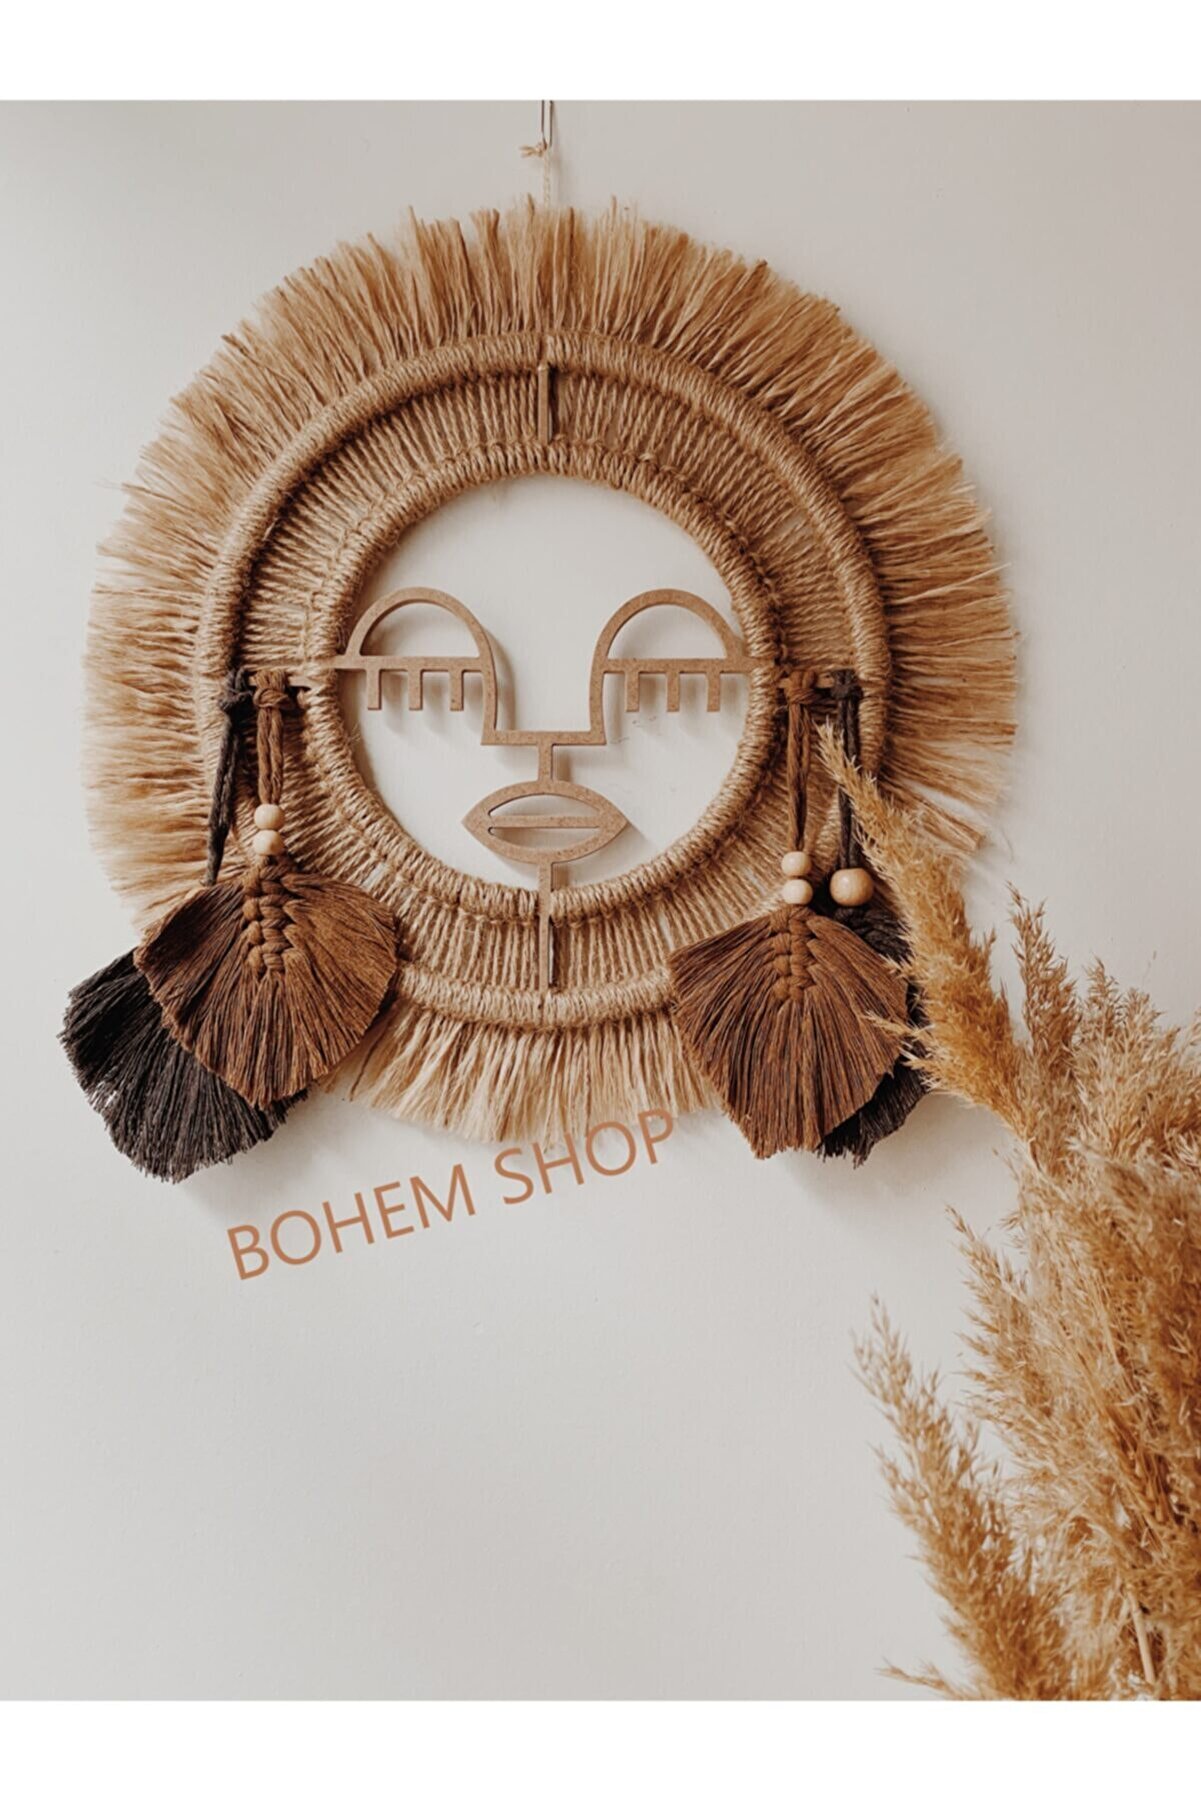 Bohem Shop El Yapımı Kadın Figürlü Etnik-bohem Makrome Yapraklı Duvar Süsü Duvar Dekoru - Bohemshop.com